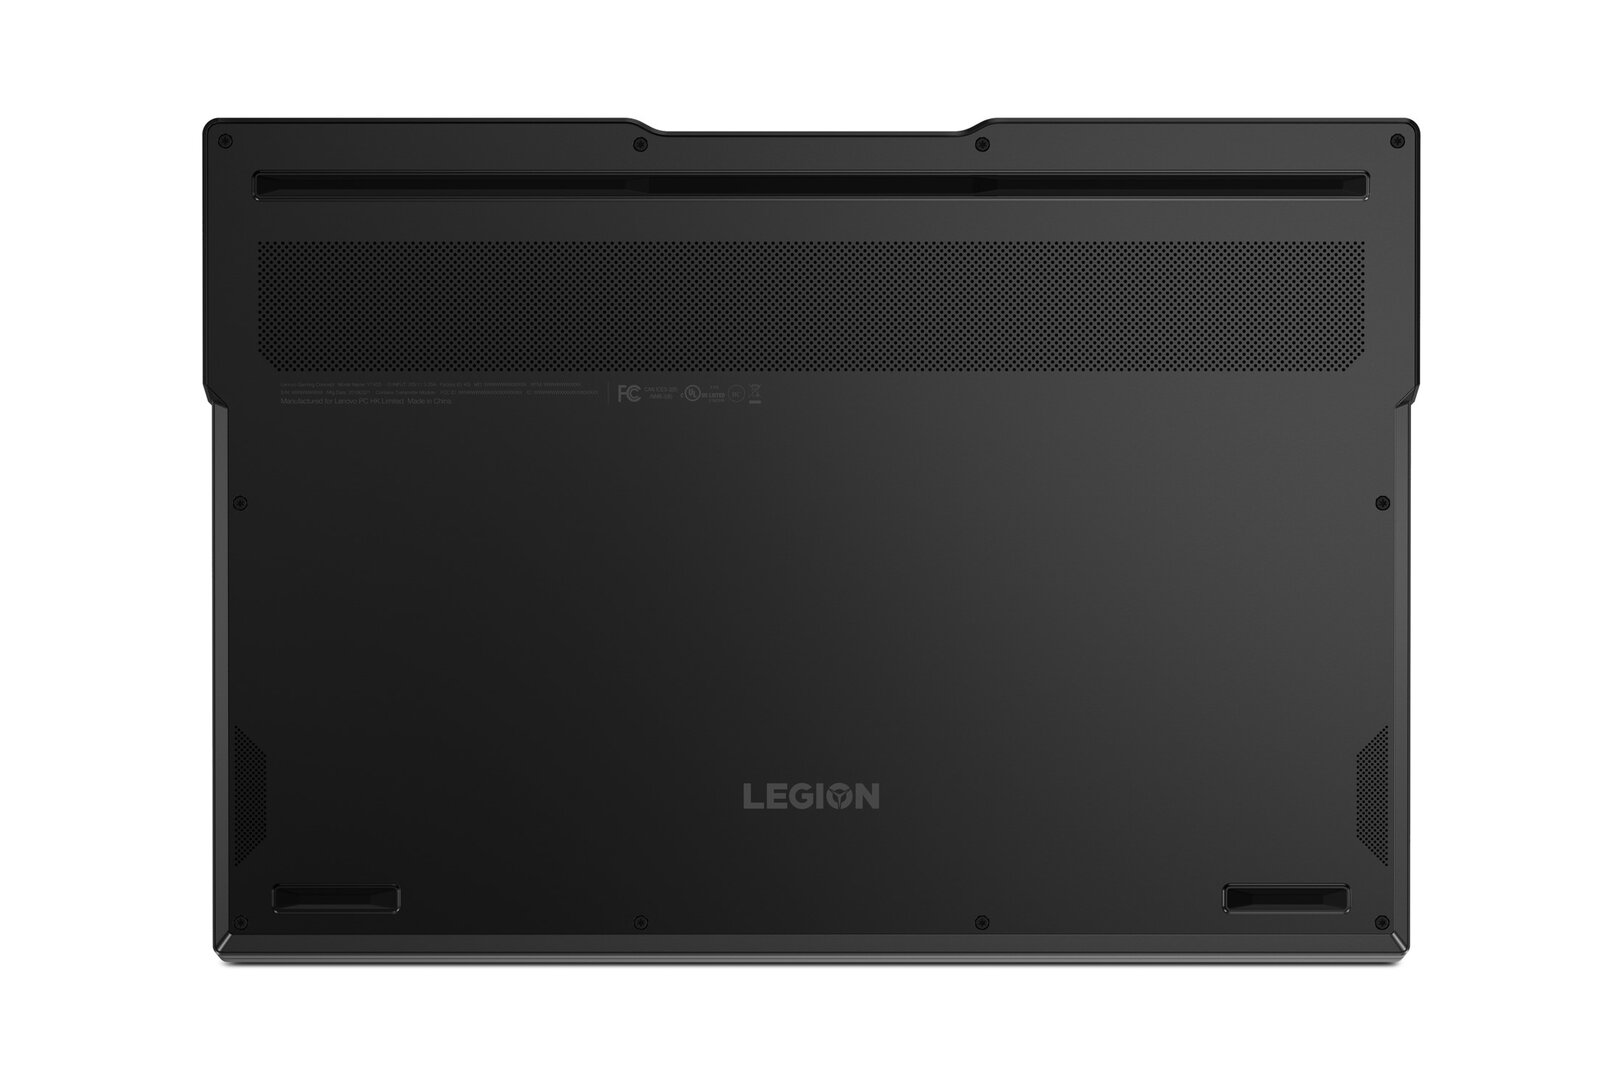 Lenovo Legion Y740s